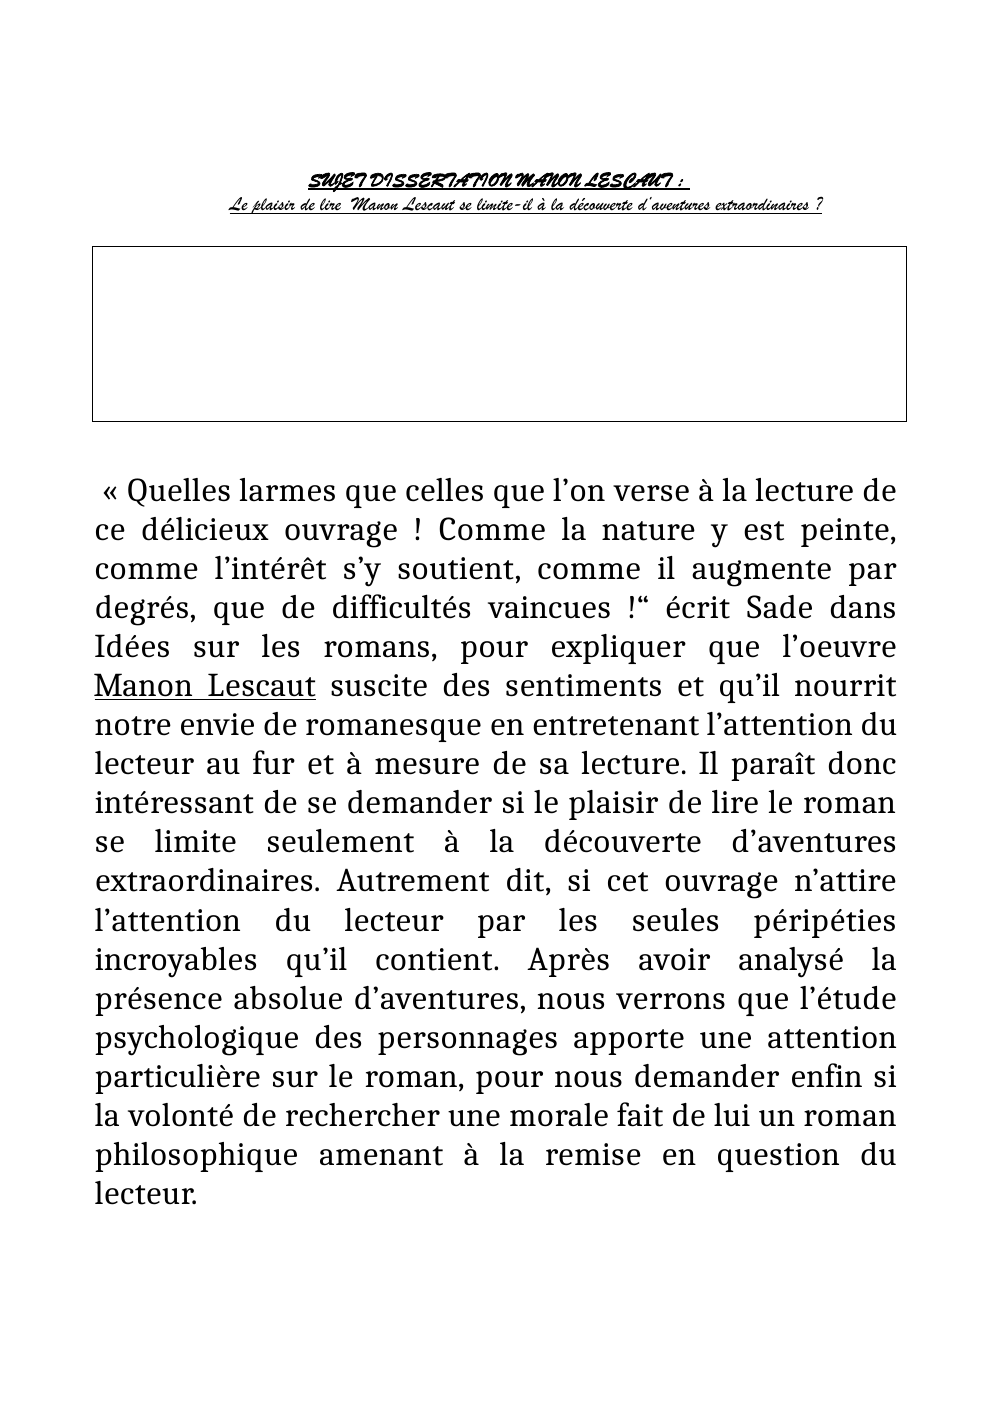 Prévisualisation du document Le plaisir de lire Manon Lescaut se limite-il à la découverte d’aventures extraordinaires ?